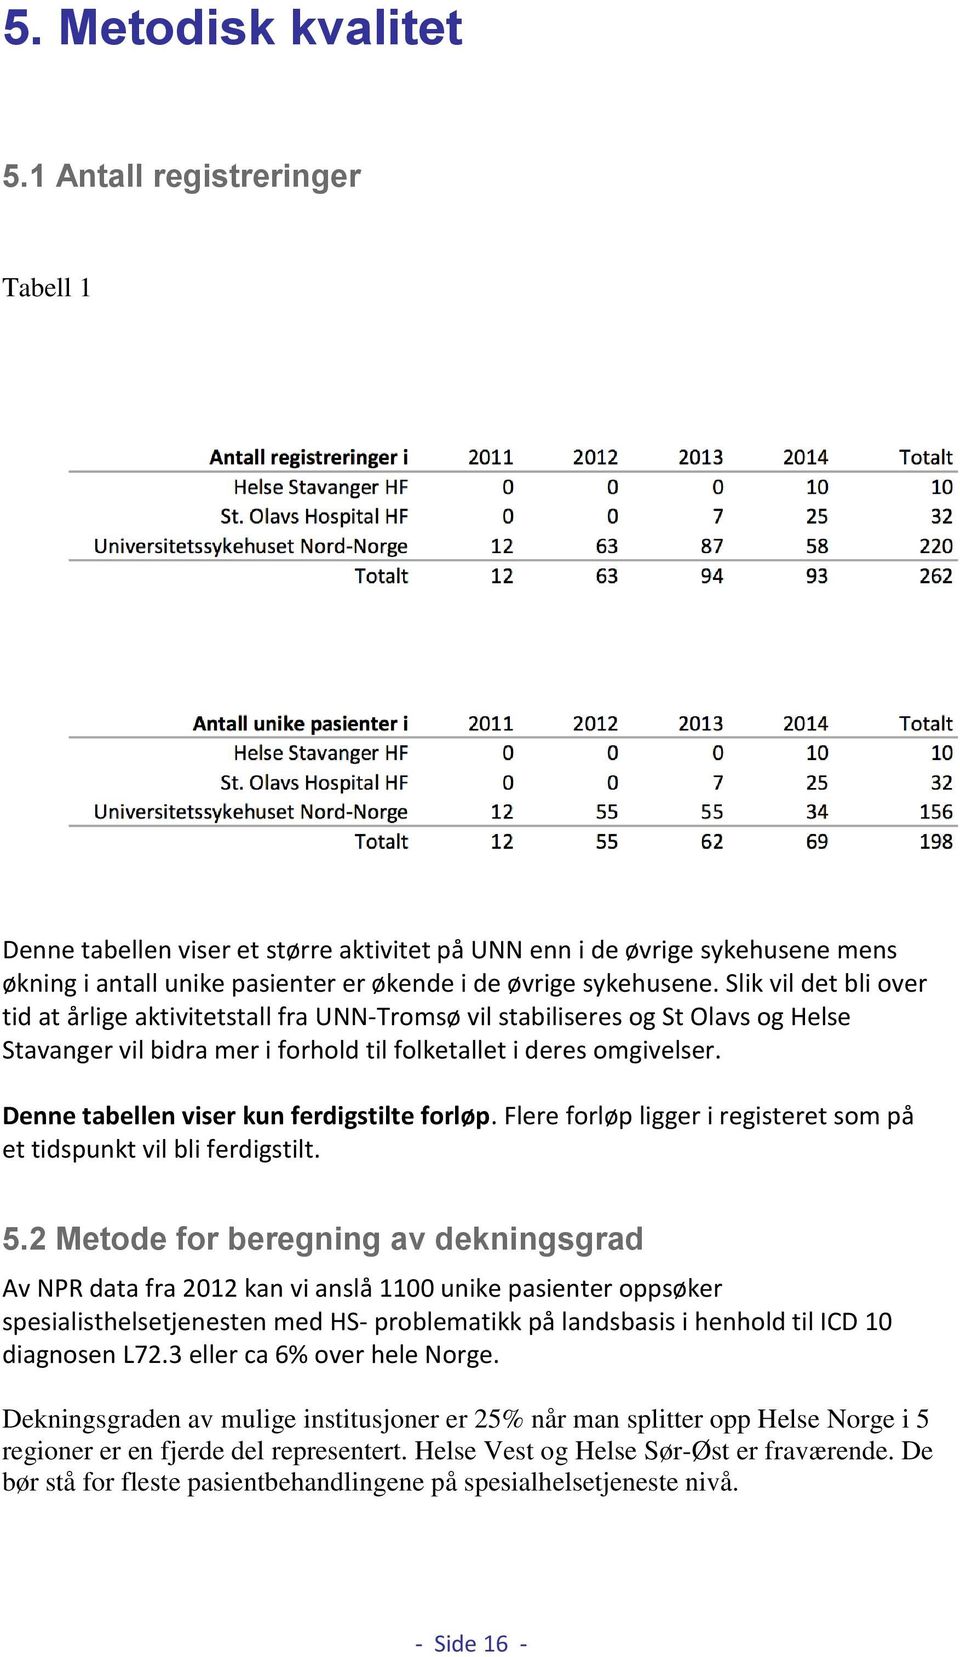 Slik vil det bli over tid at årlige aktivitetstall fra UNN-Tromsø vil stabiliseres og St Olavs og Helse Stavanger vil bidra mer i forhold til folketallet i deres omgivelser.